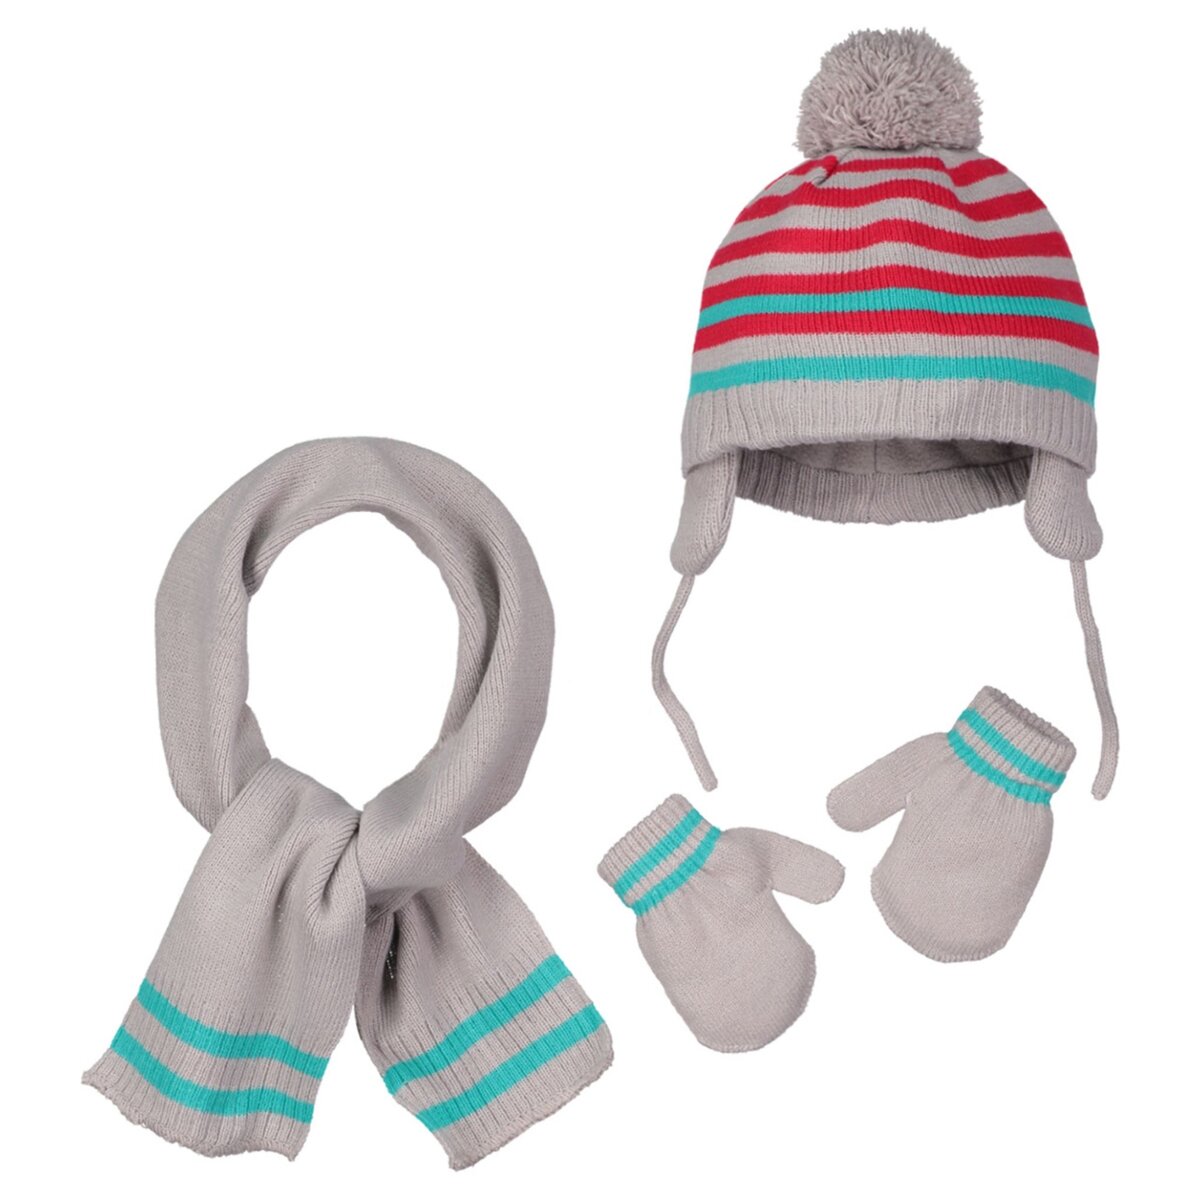 IN EXTENSO Ensemble bonnet + écharpe + gants bébé